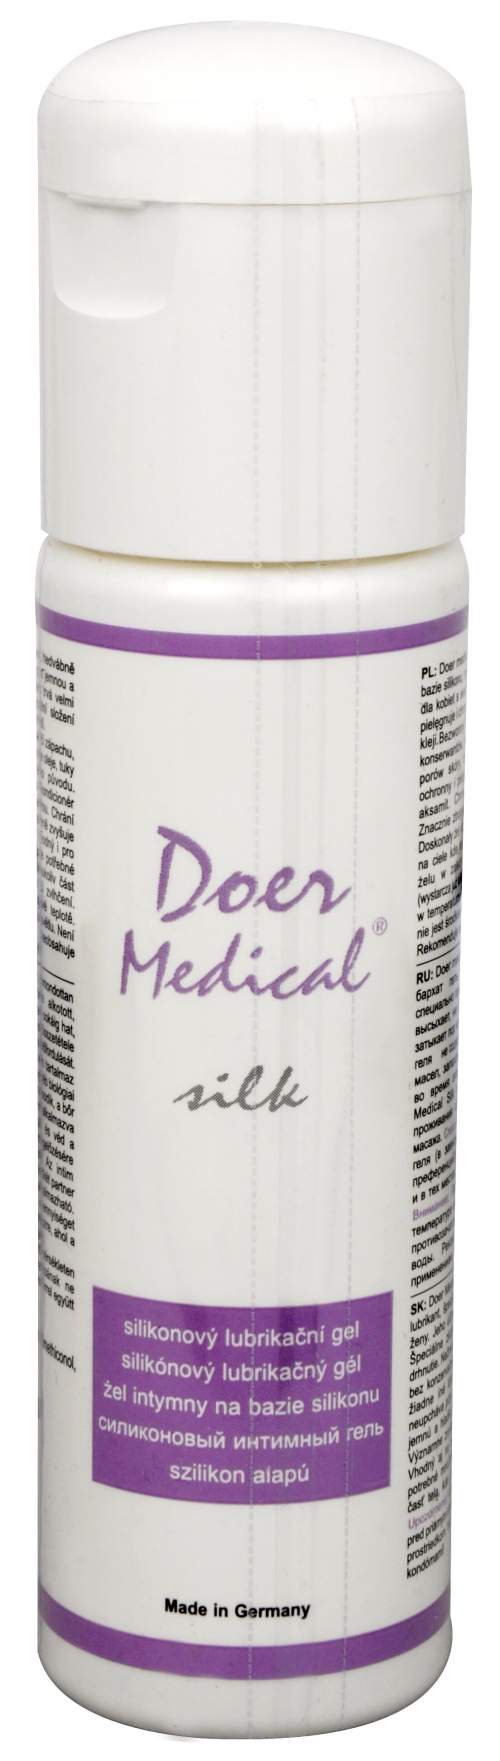 DOER MEDICAL Silk zdrav.silik.lubr.gel 100ml